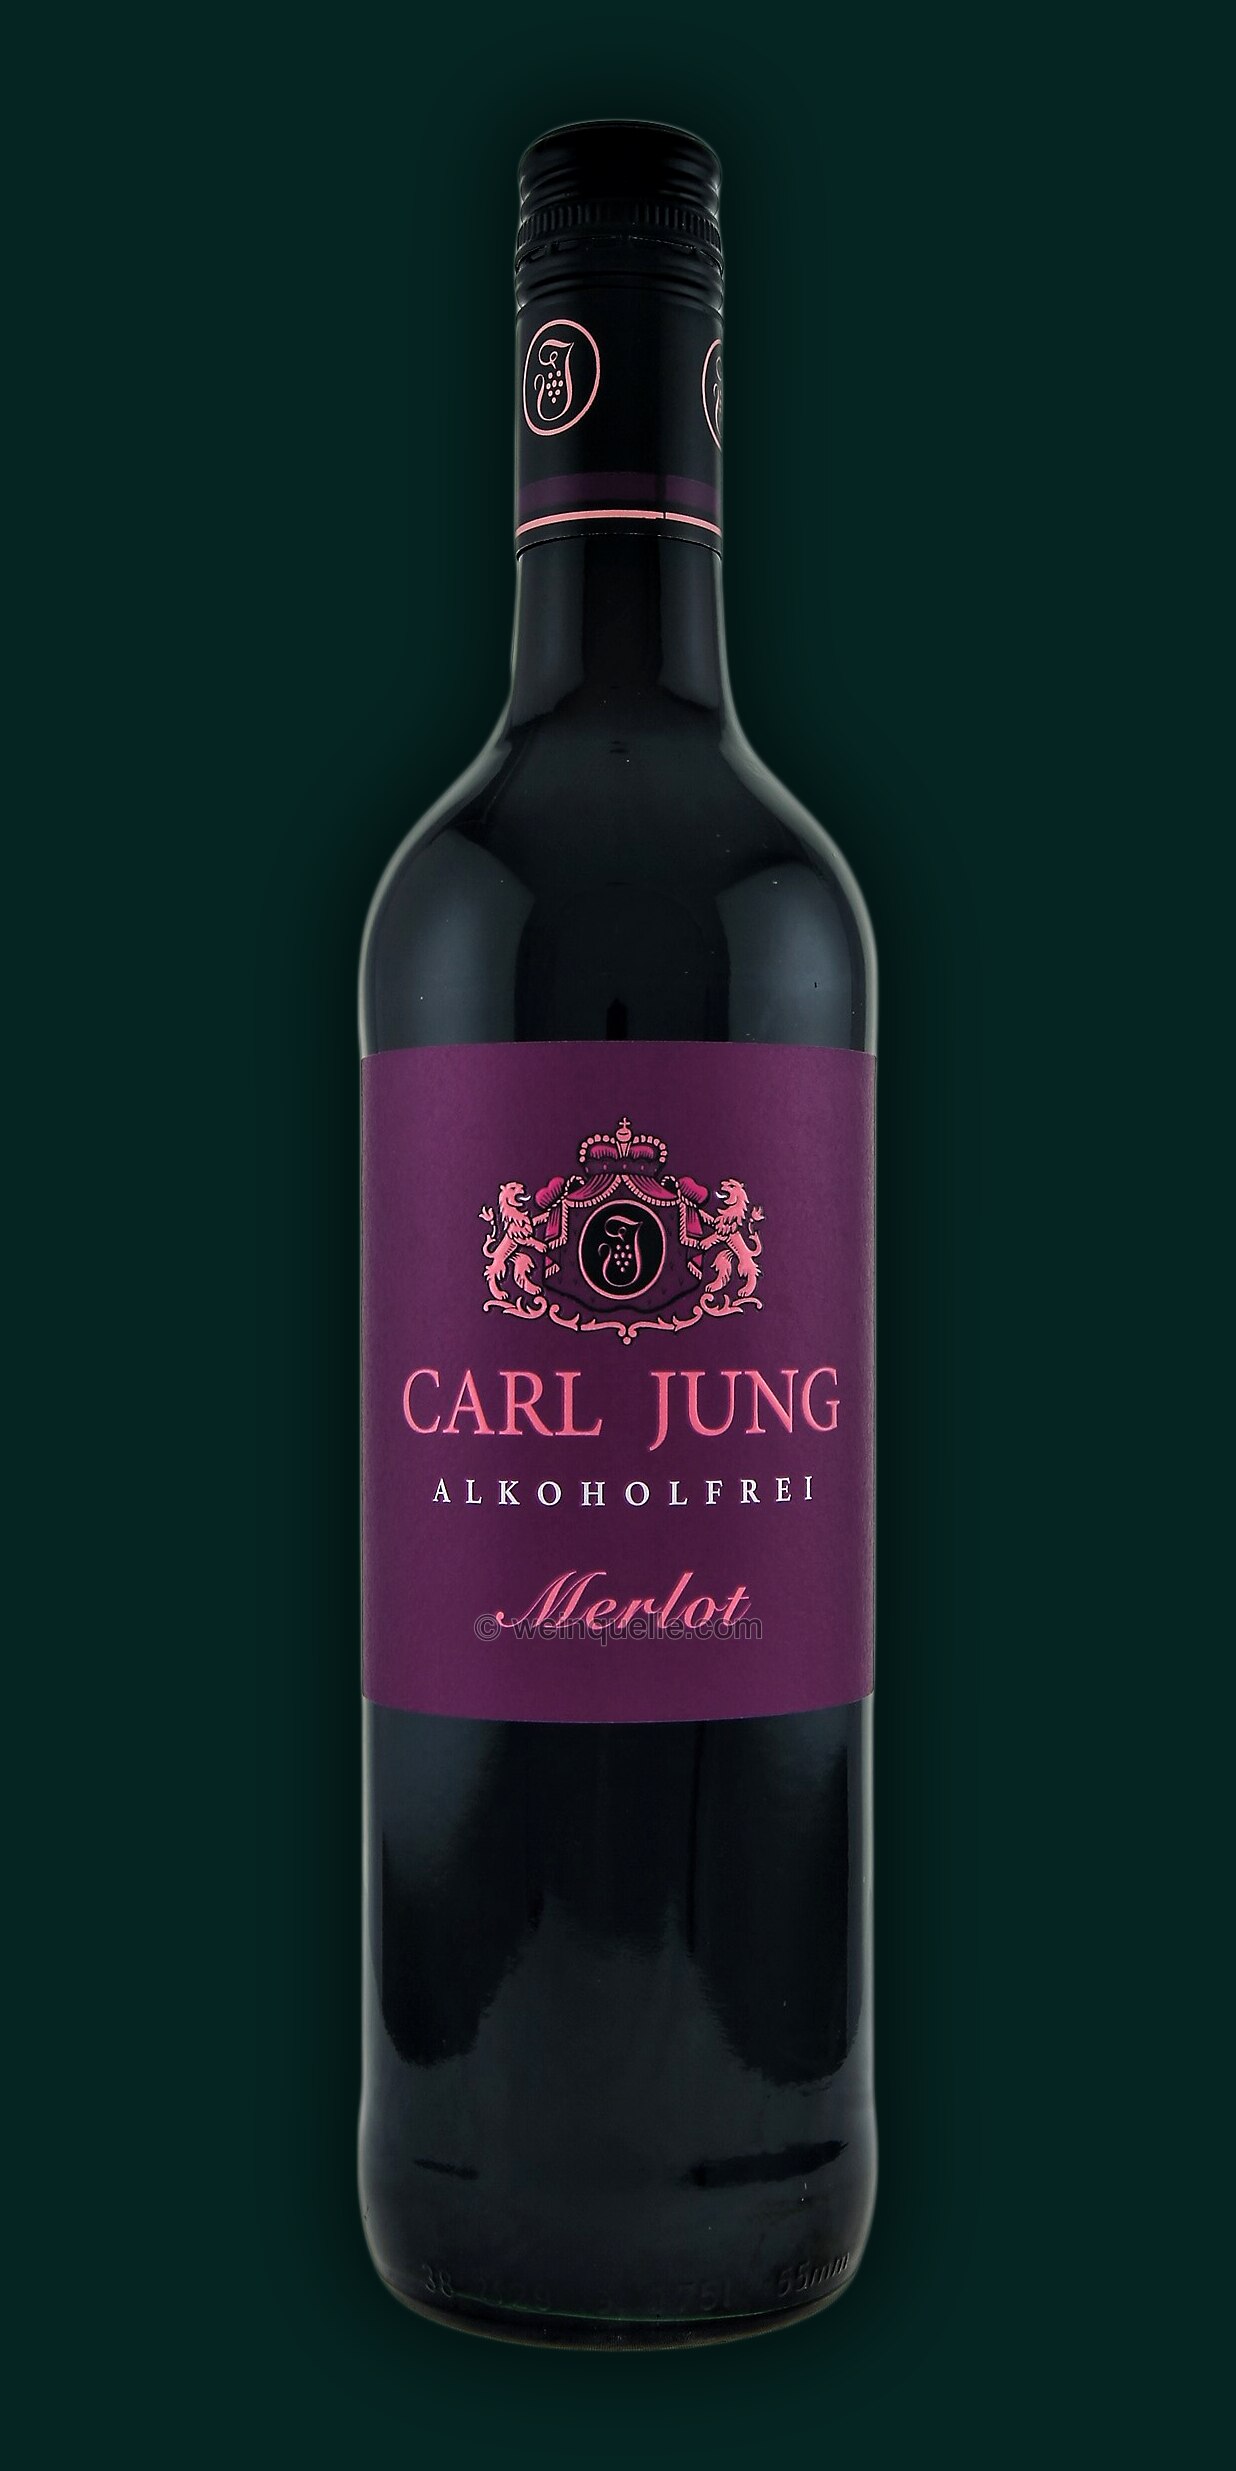 Carl Jung Merlot Alkoholfrei, 5,20 Lühmann Weinquelle - €